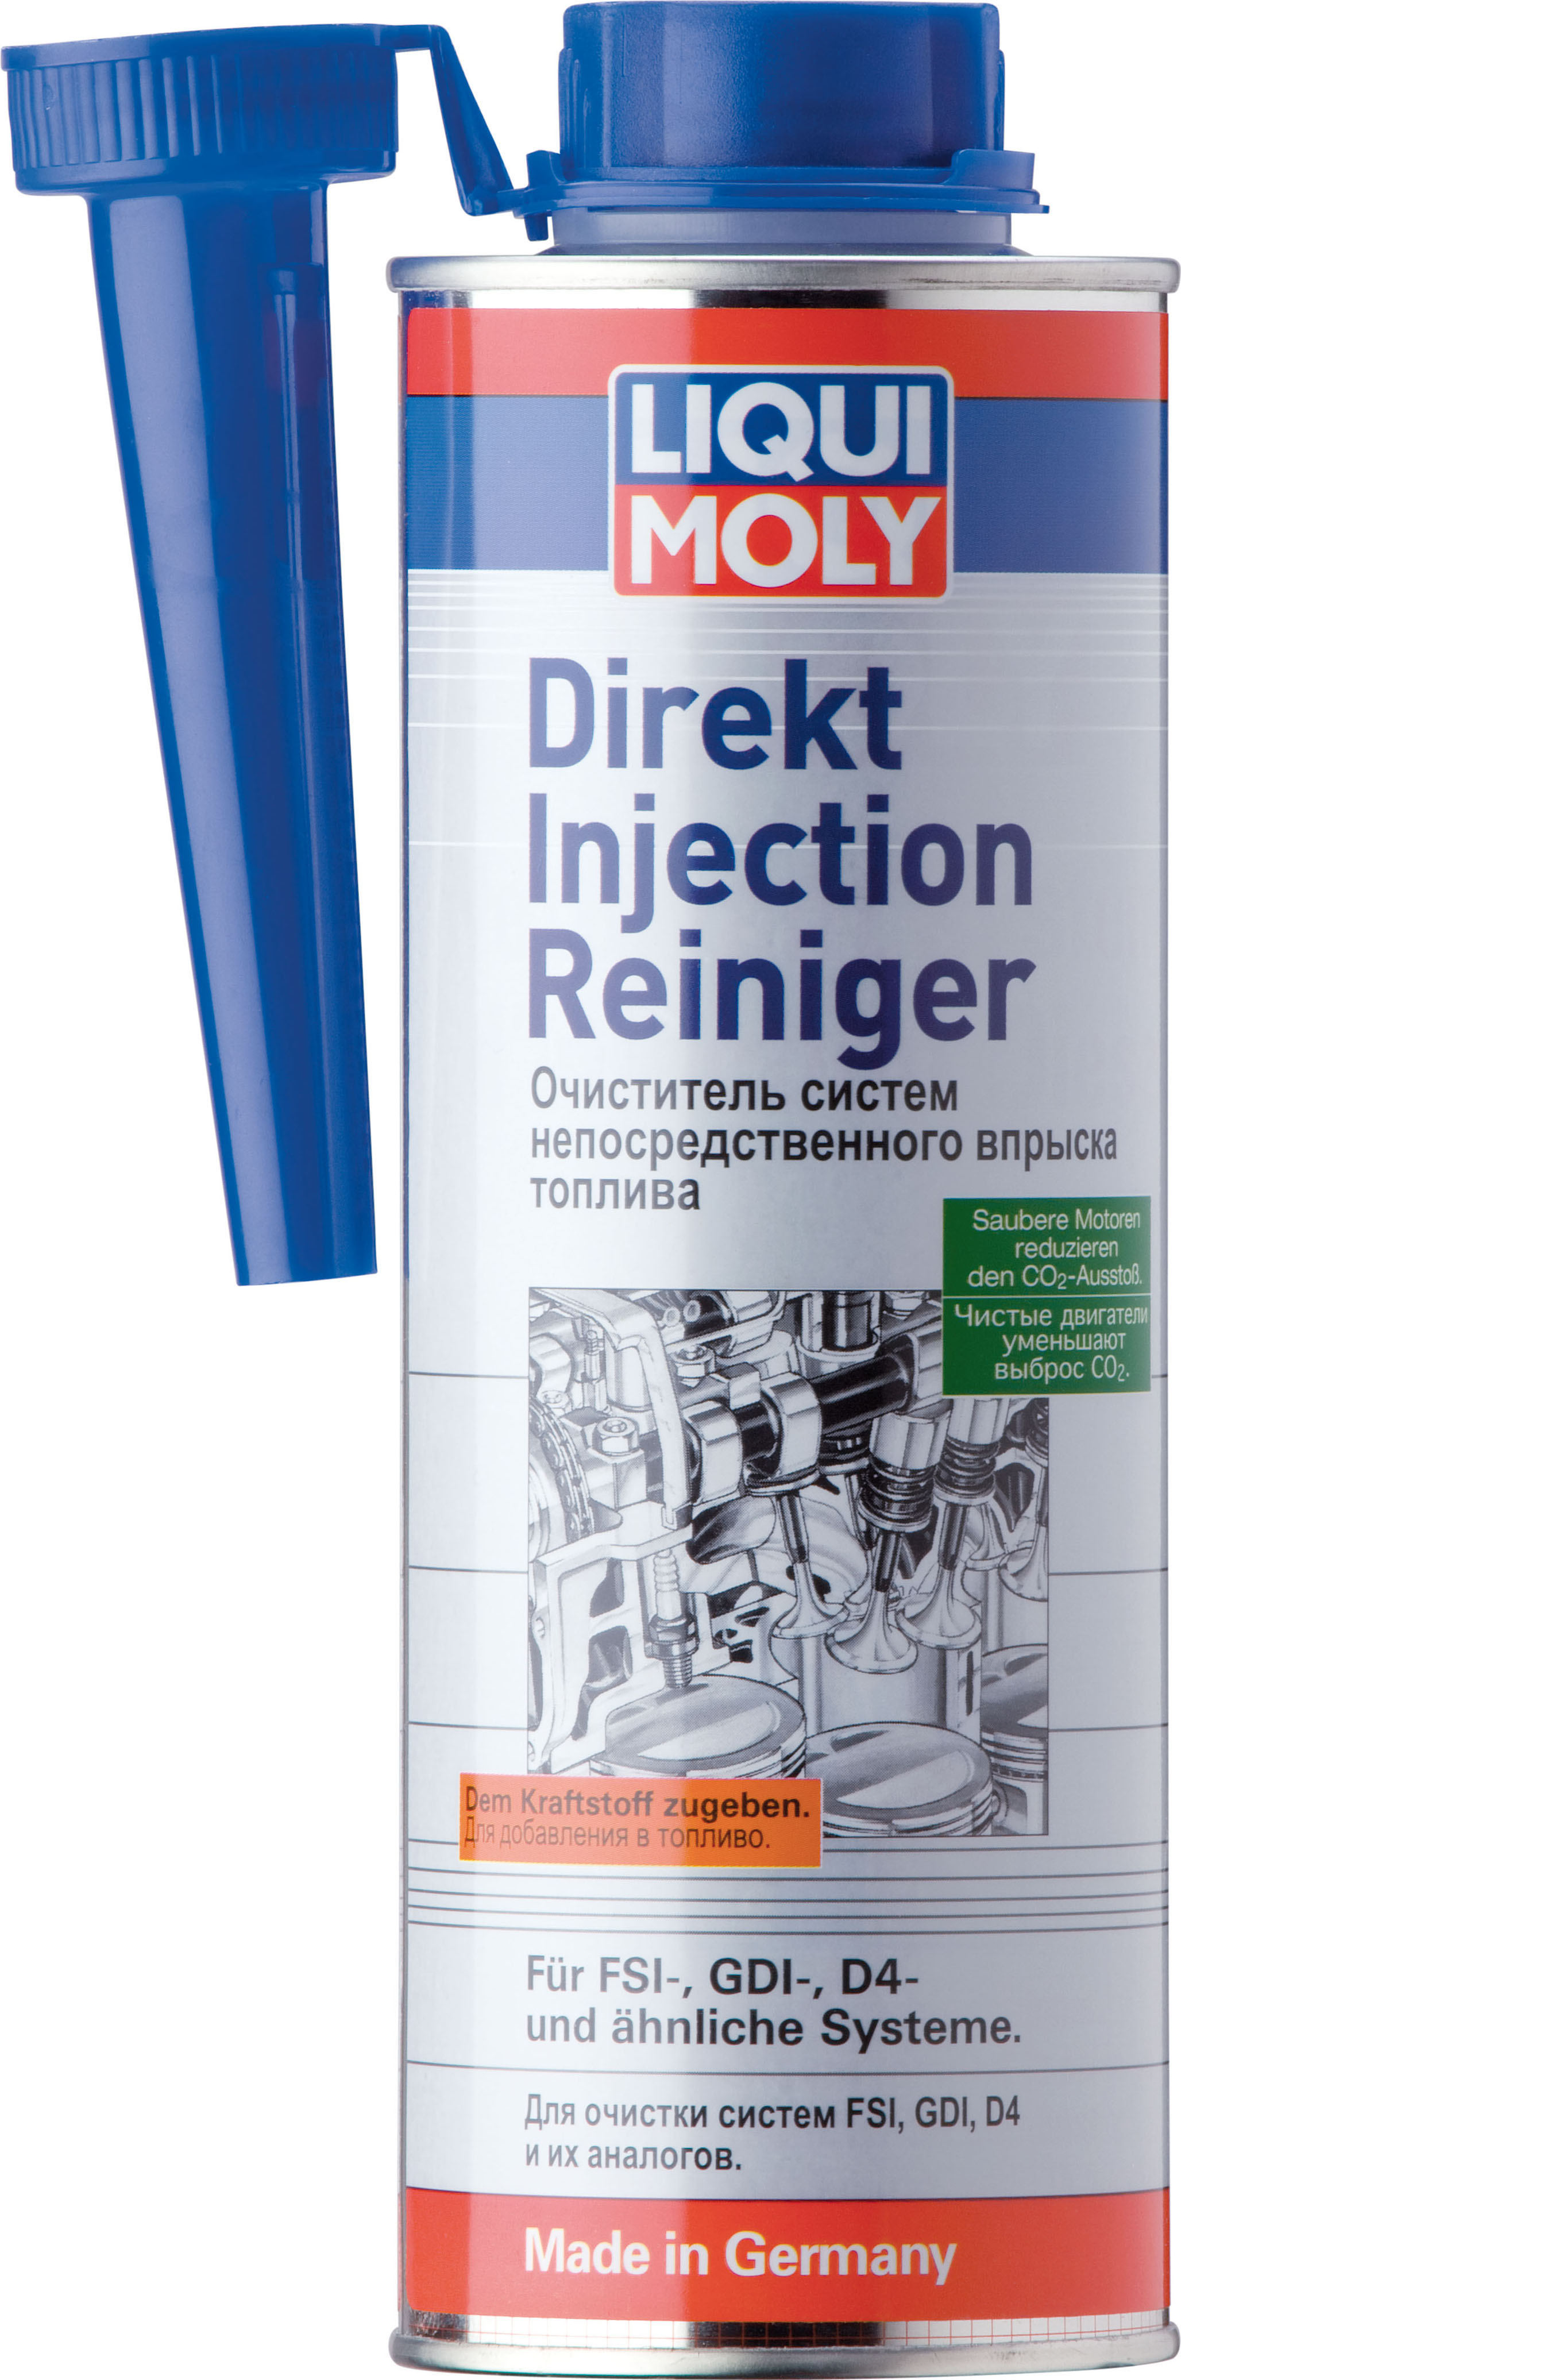 Очиститель систем непосредственного впрыска топлива LIQUI MOLY Direkt Injection Reiniger (0,5 литра)